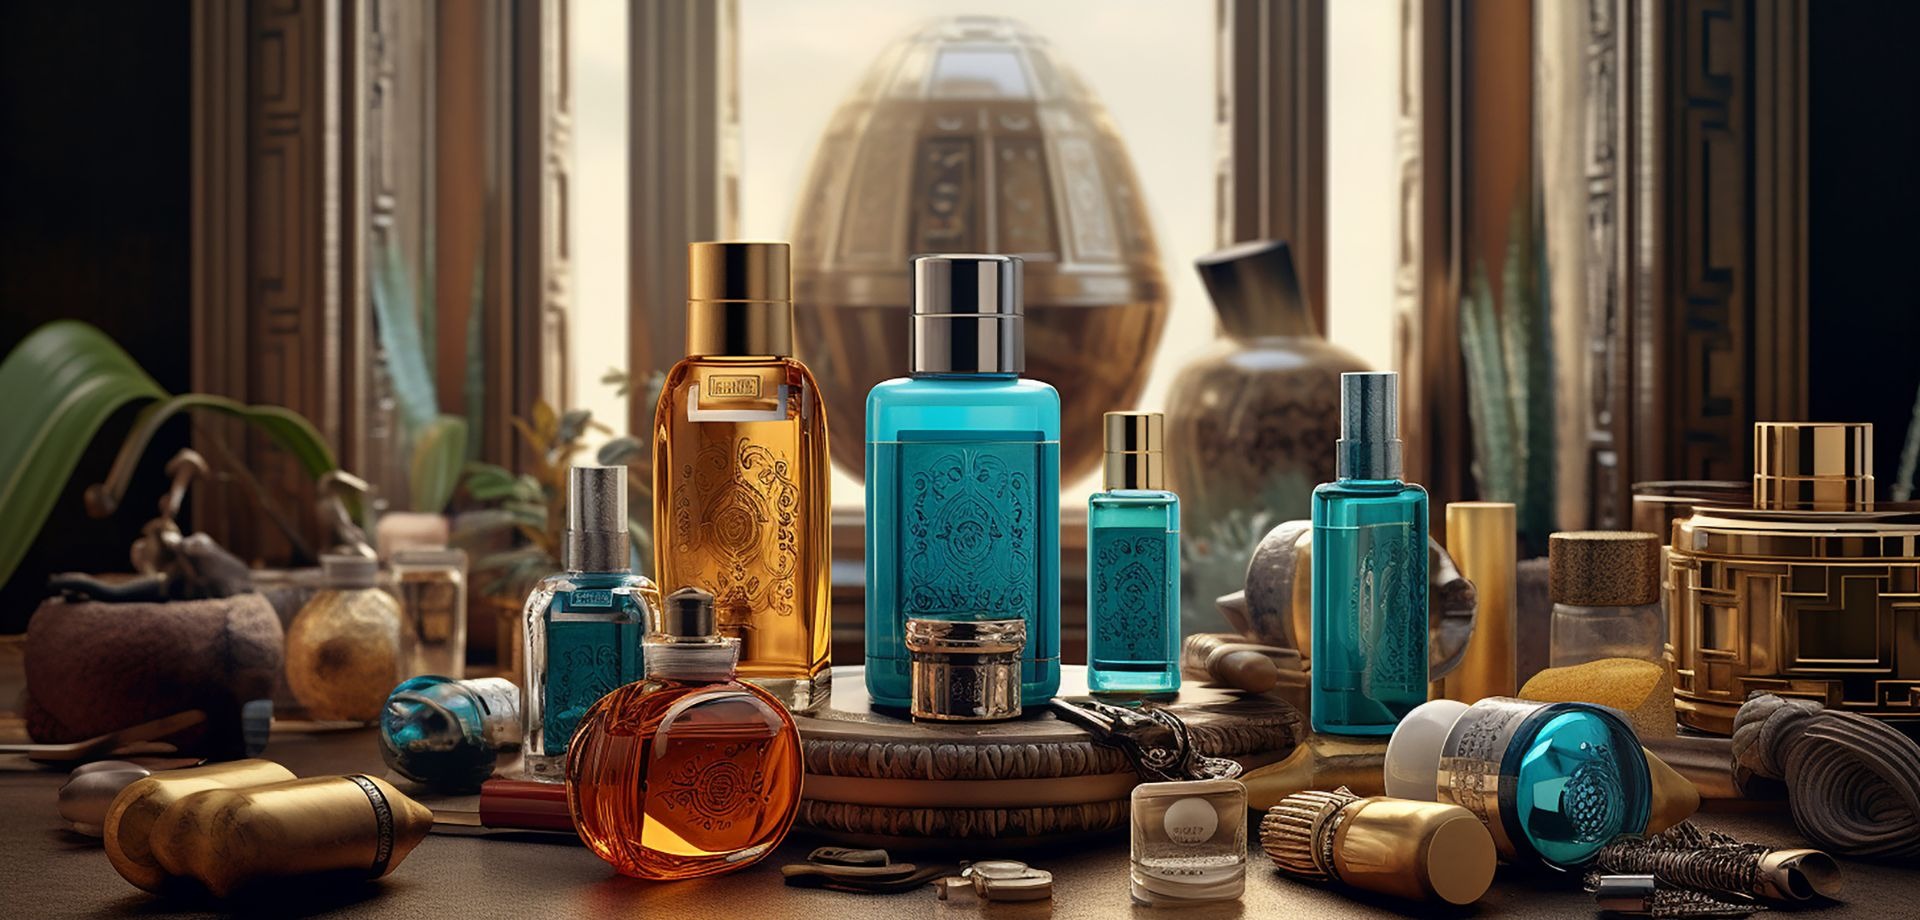 El viaje olfativo: Historia y origen de los perfumes más emblemáticos